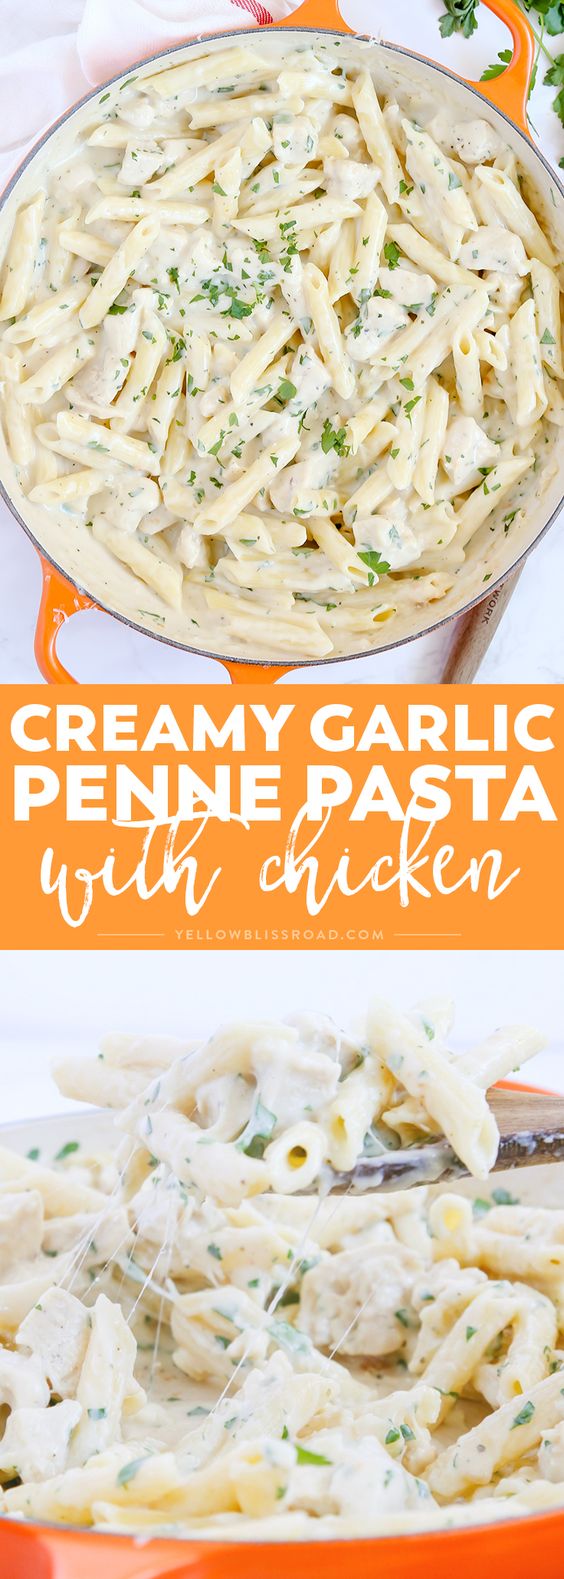 Creamy Garlic Penne Pasta With Chicken